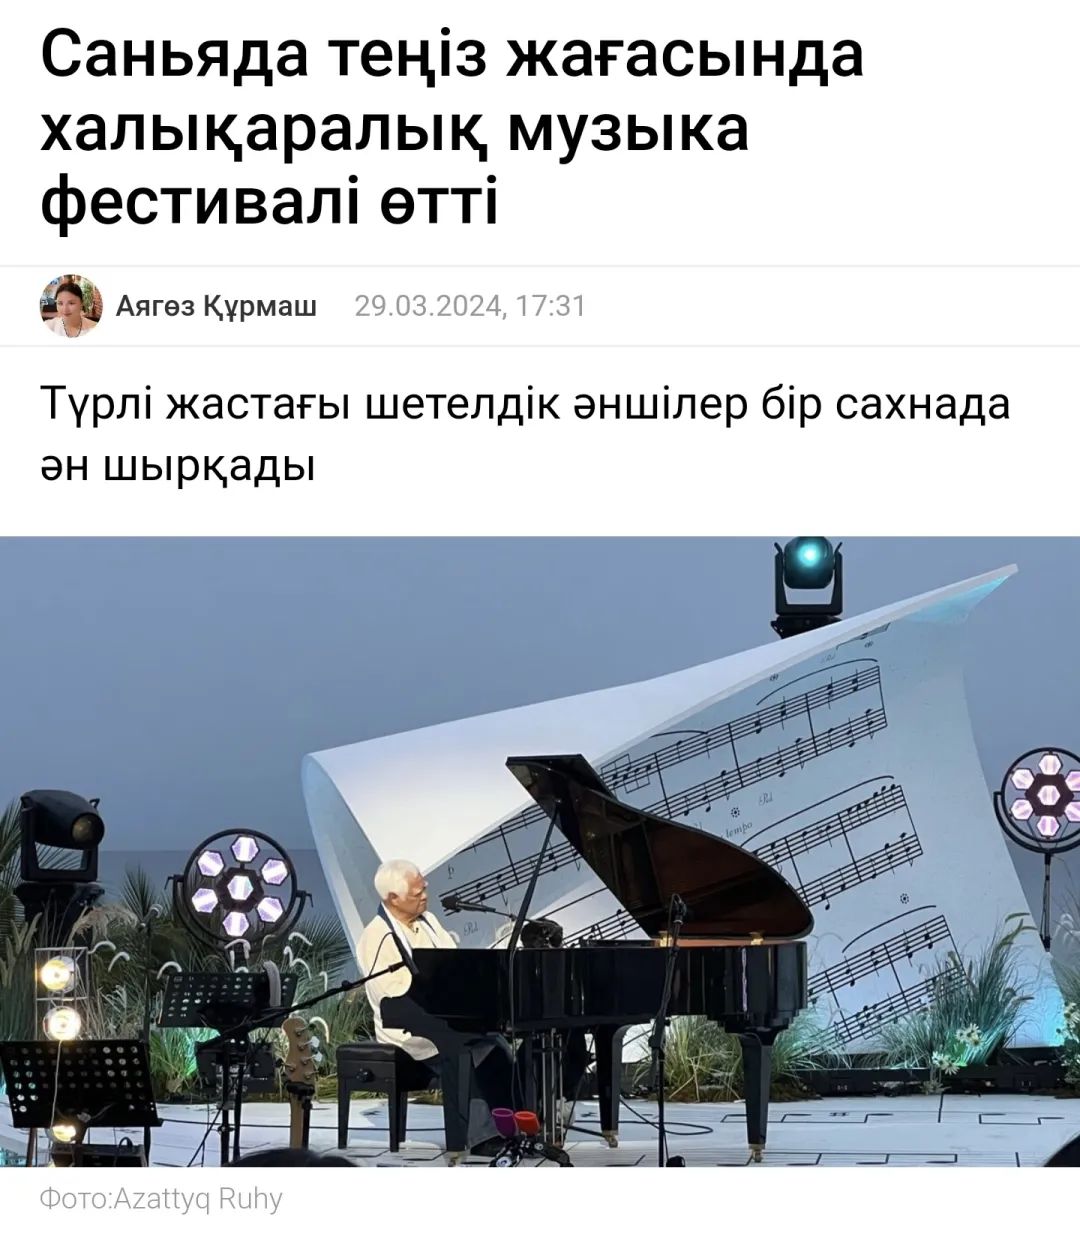 哈萨克斯坦媒体对音乐会进行报道